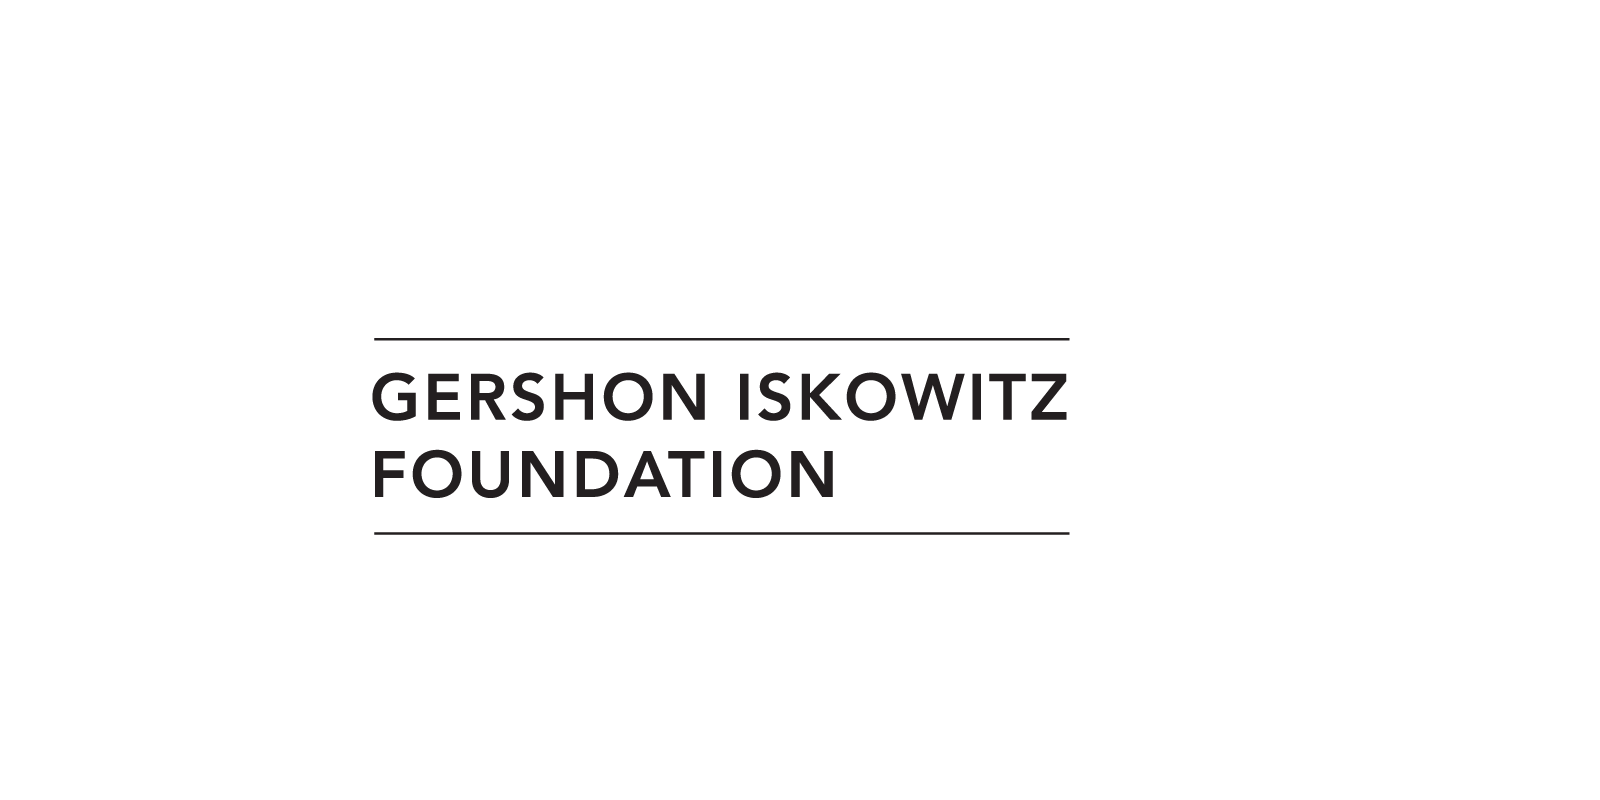 Gershon Iskowitz Foundation